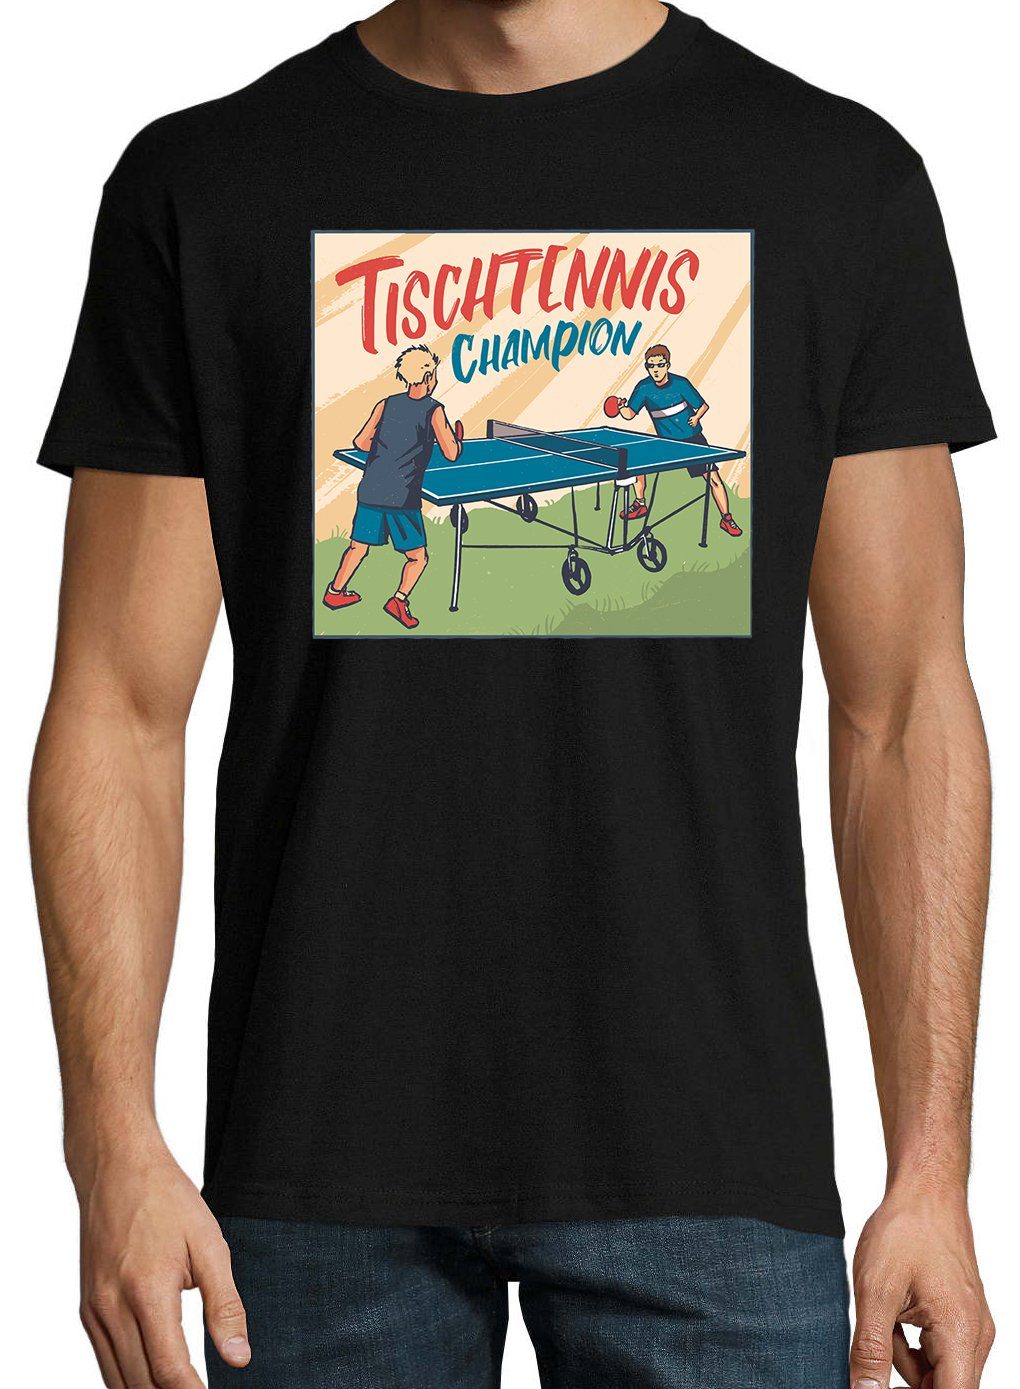 Champion mit Herren Tischtennis Schwarz trendigem T-Shirt Shirt Frontprint Designz Youth